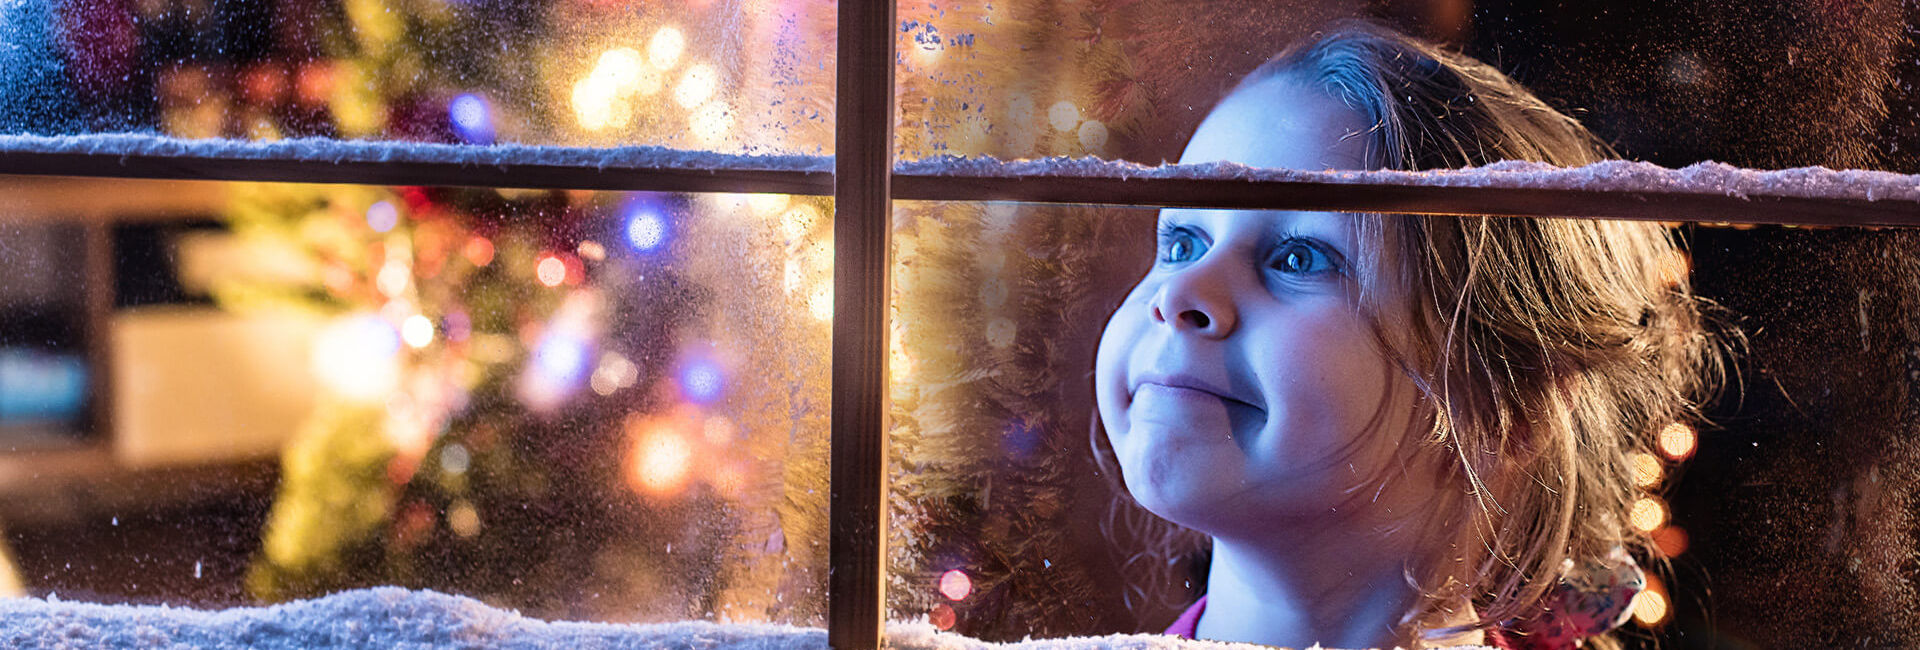 Child looks through frozen window - Christmas Eve package Gasterij 't Karrewiel